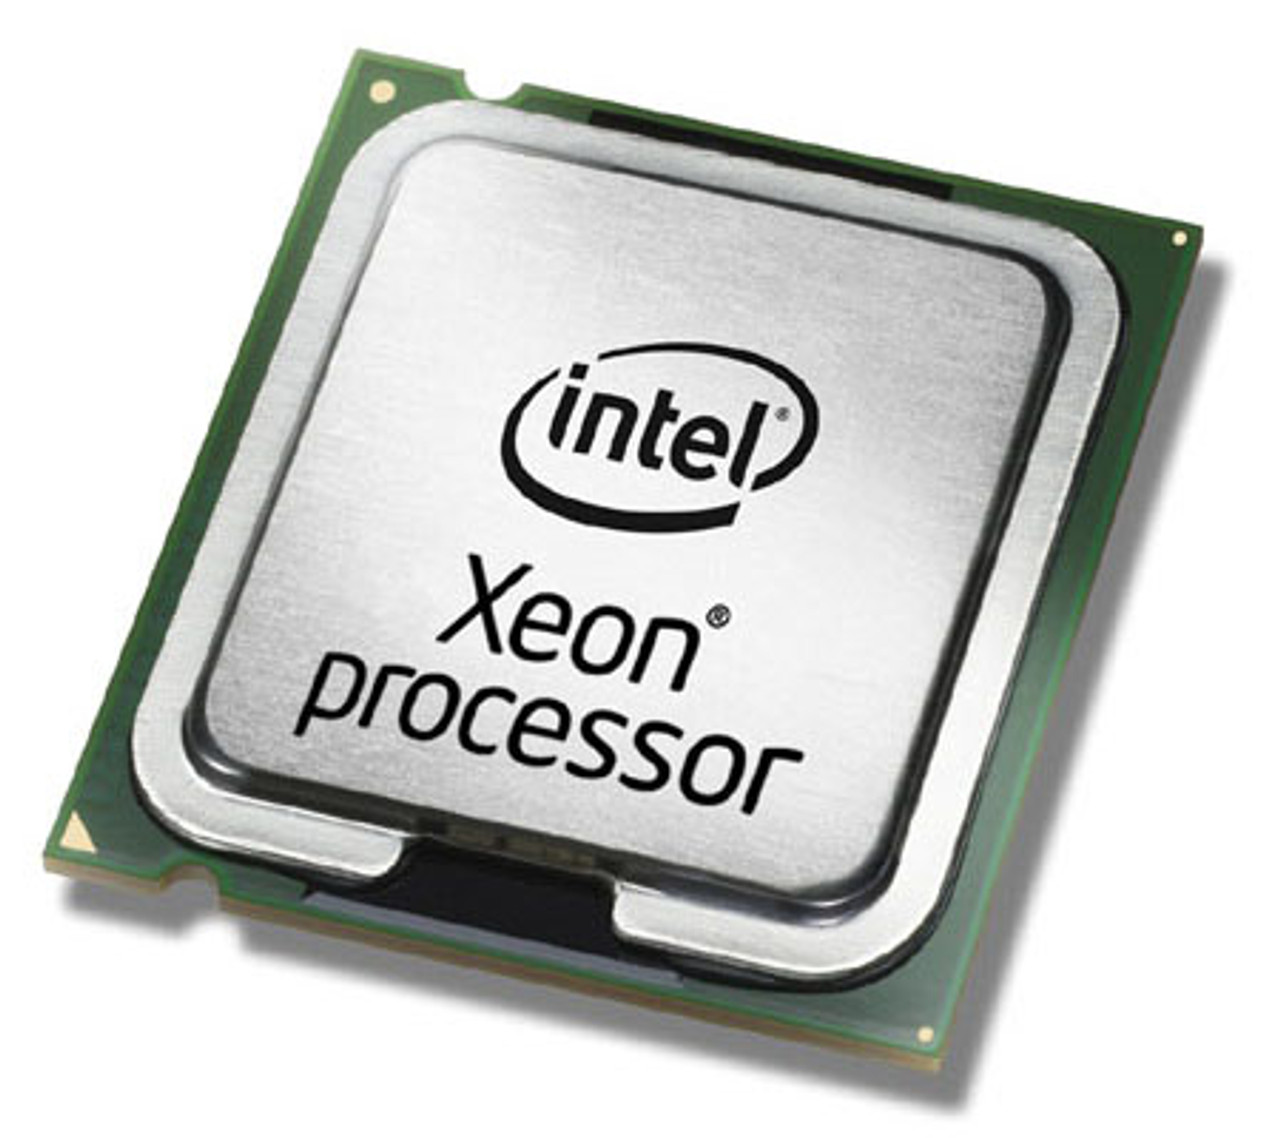 7130M Intel Xeon 7130M Dual Core 3.20GHz 800MHz FSB 8MB L2 Cache Processor